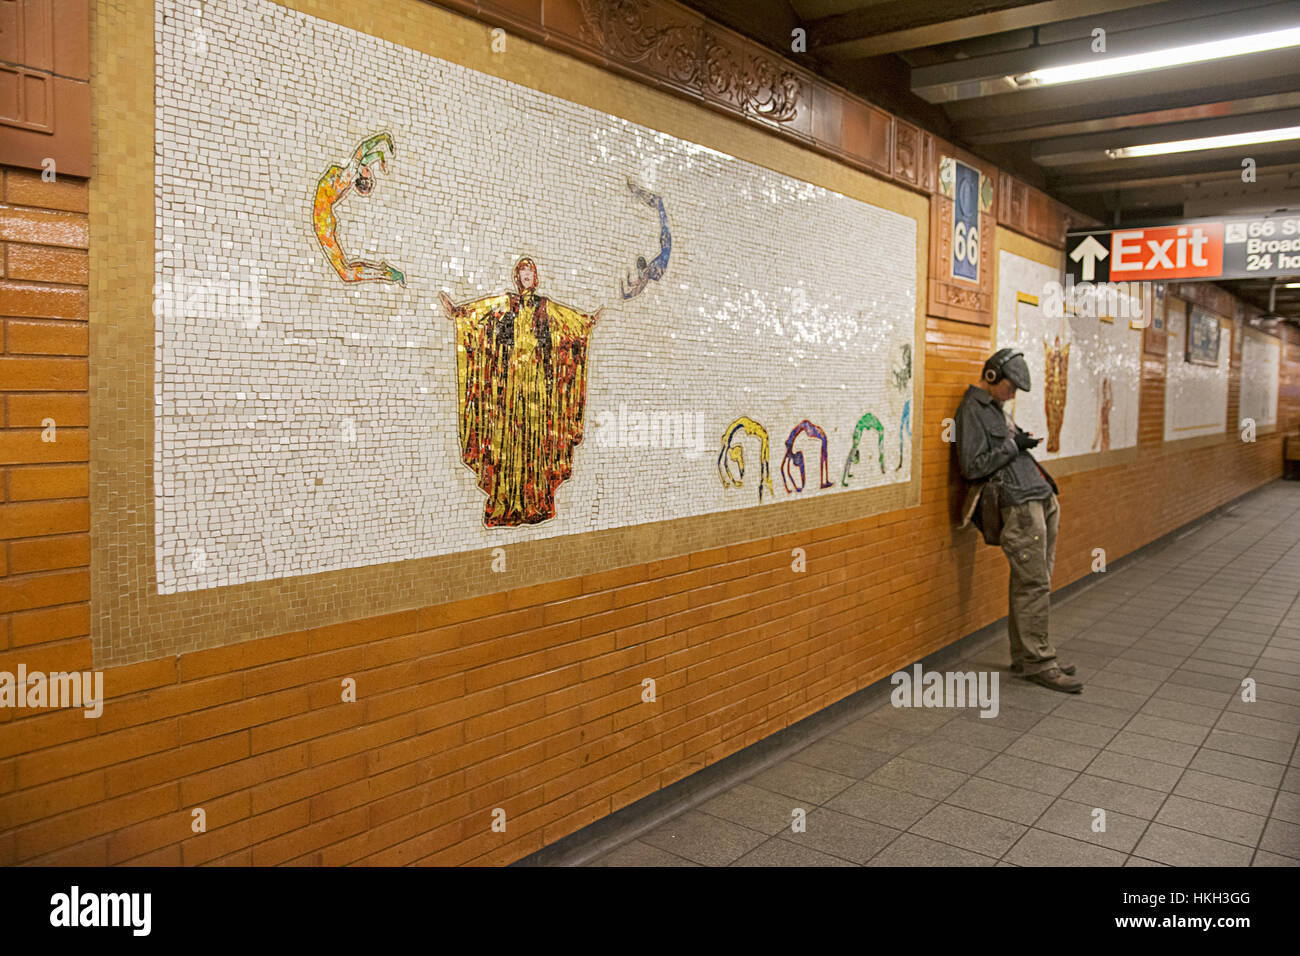 L'art au métro de West 66th Street station de métro sur la ligne n°1 dans l'Upper West Side de Manhattan, New York City Banque D'Images